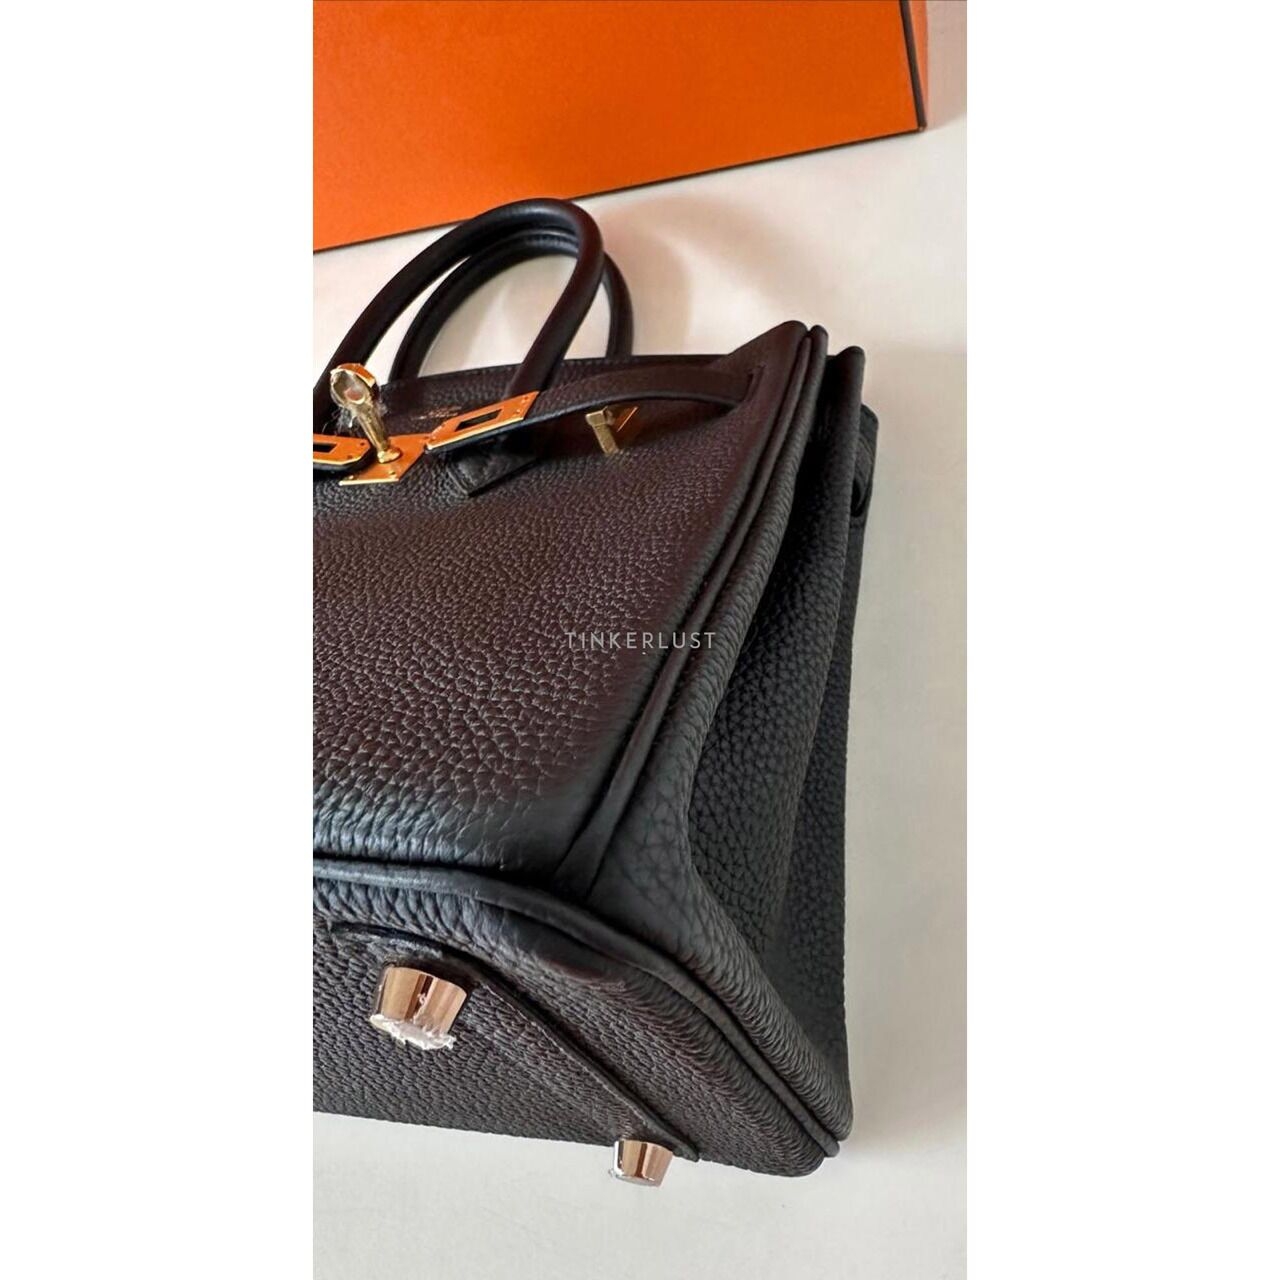 Hermes Birkin 25 Black Togo RGHW #D Handbag